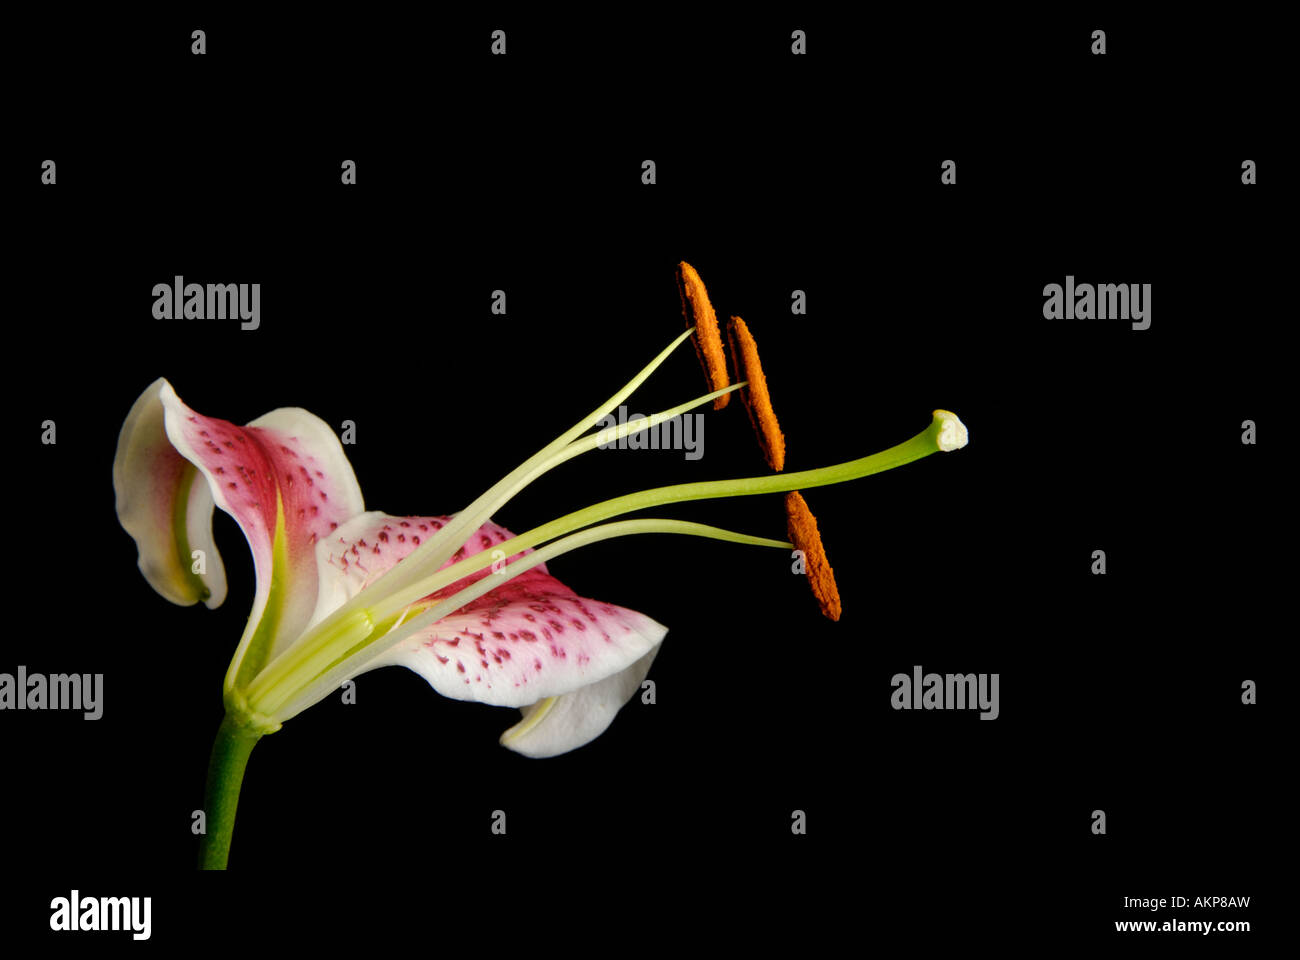 Sezione trasversale del fiore che mostra ovaia, carpel, stami e altre strutture riproduttive parti Foto Stock